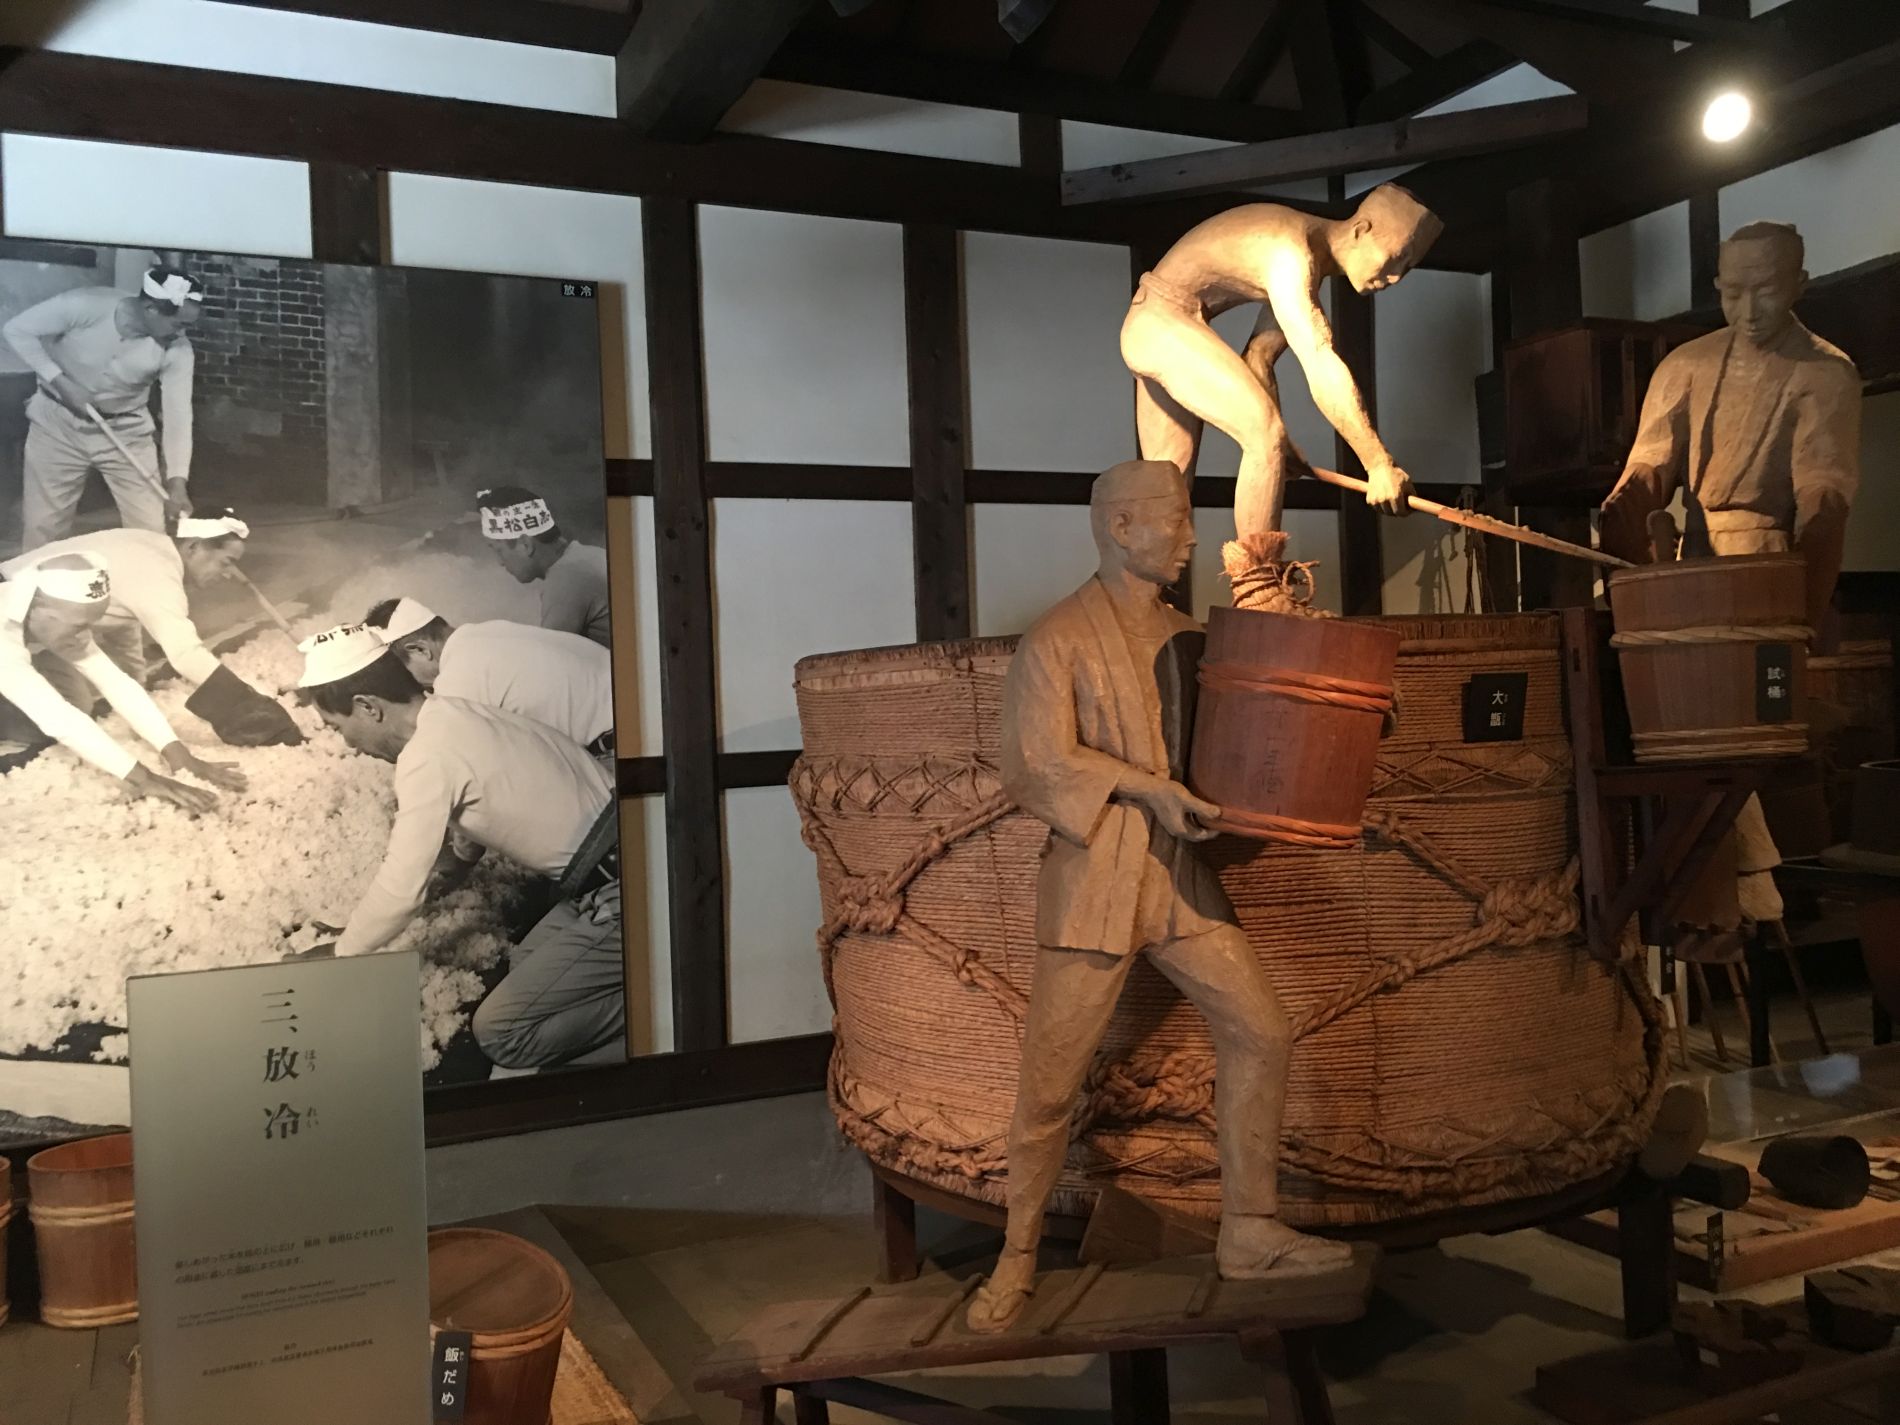 Japan Hakushika Memorial Sake Museum Exhibit Animals Depicted in Japanese Art 003